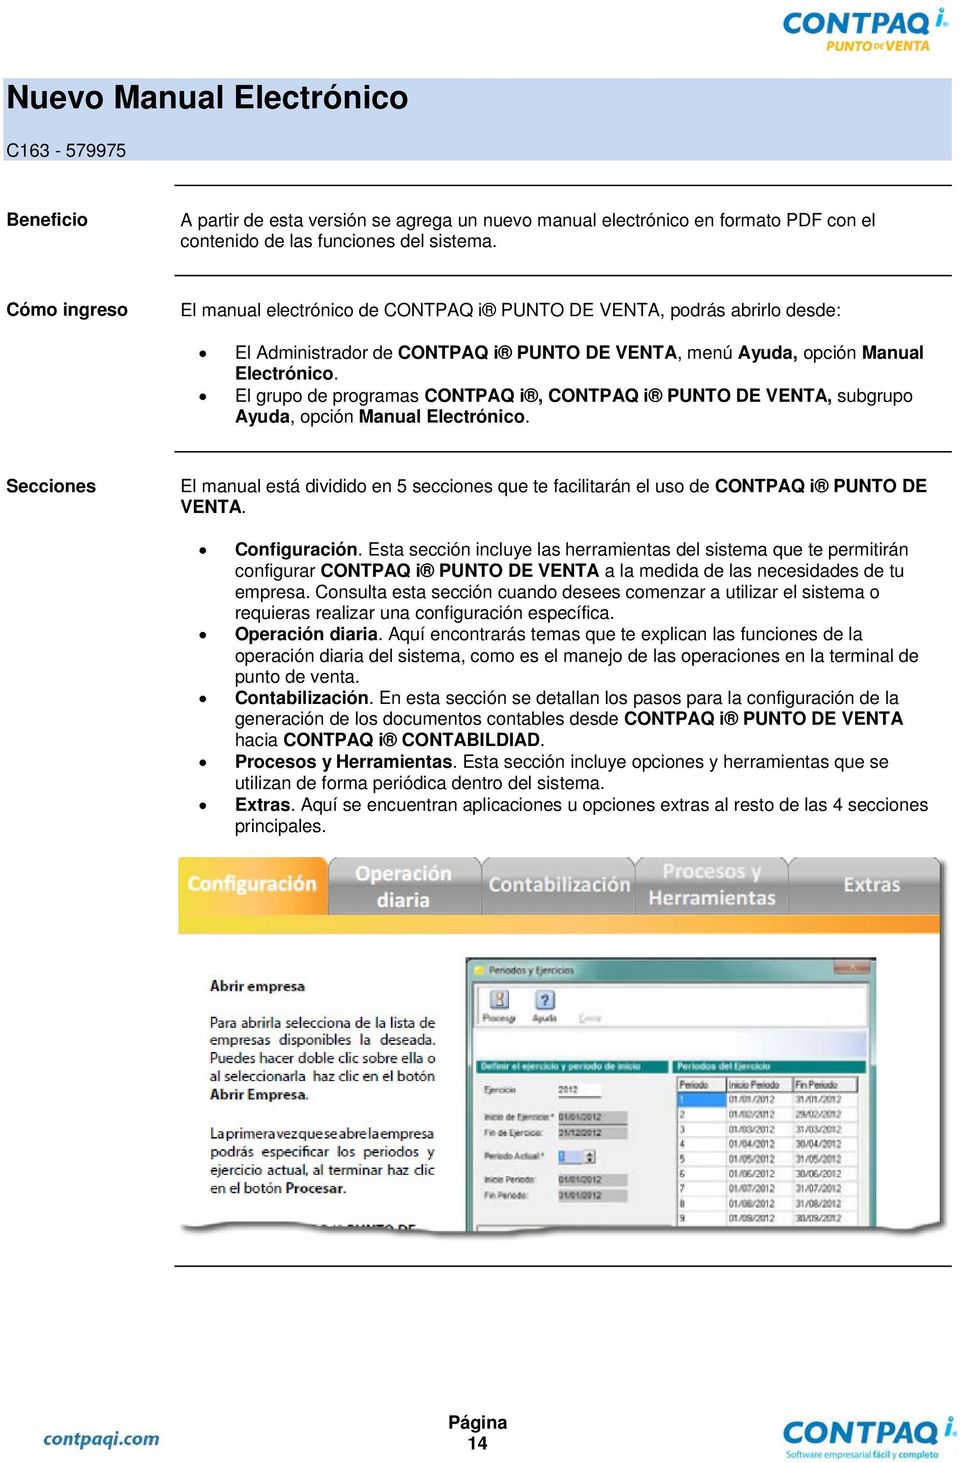 El grupo de programas CONTPAQ i, CONTPAQ i PUNTO DE VENTA, subgrupo Ayuda, opción Manual Electrónico.